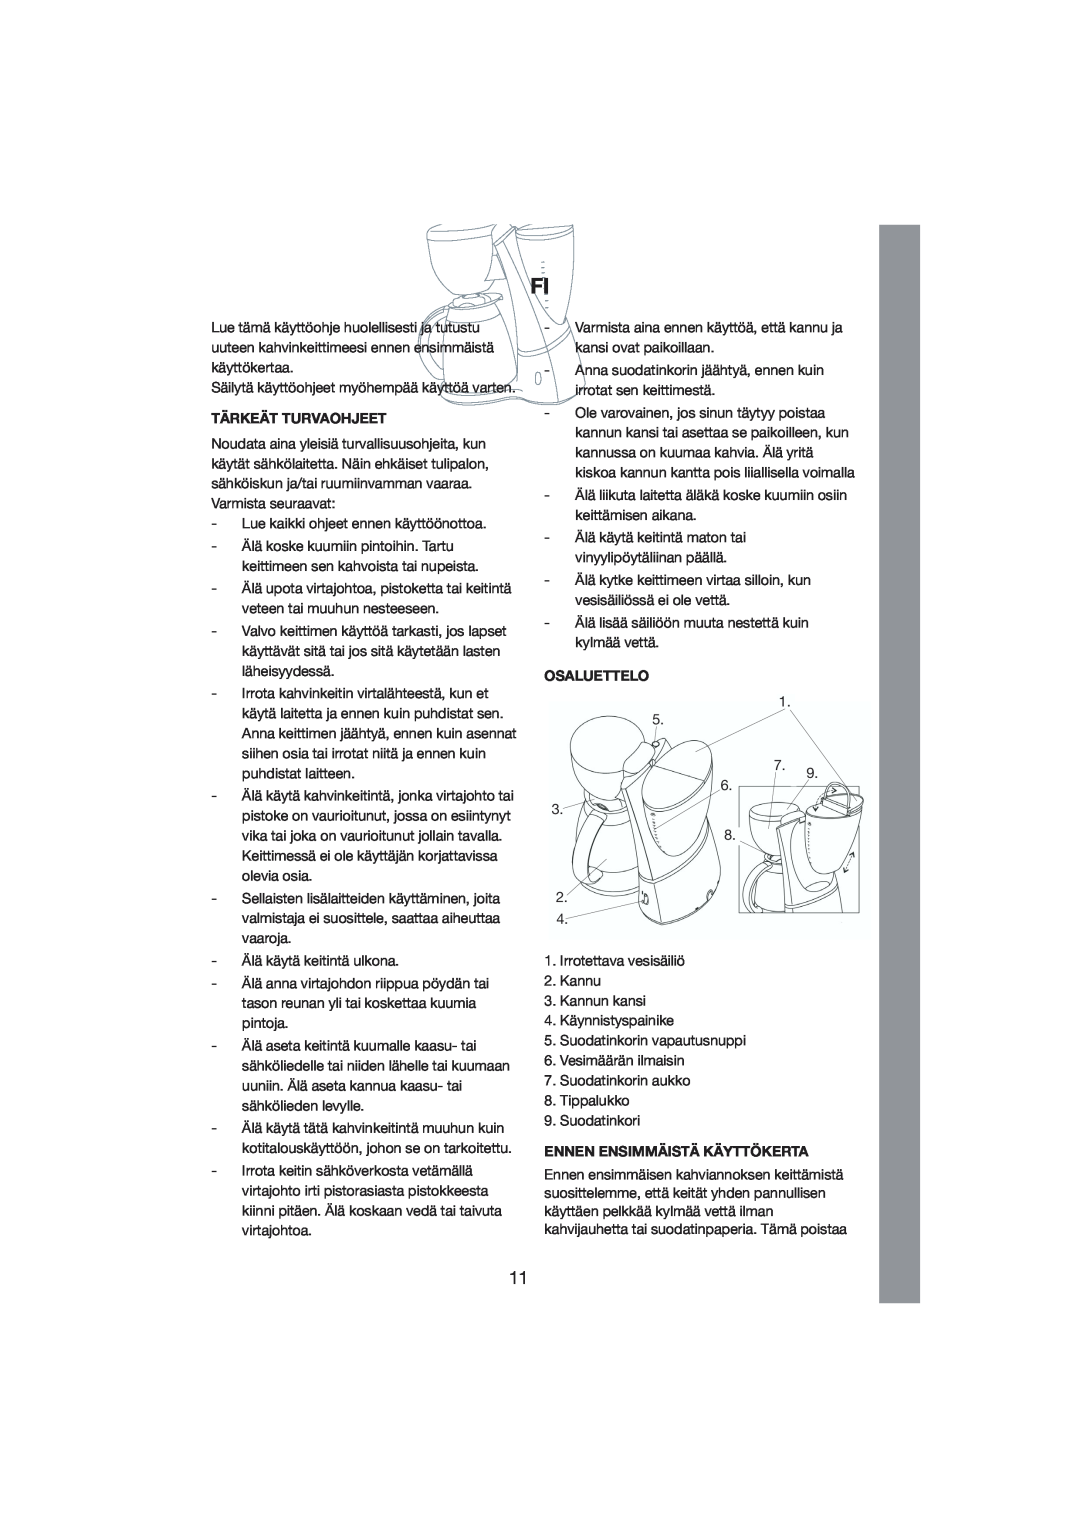 Melissa 245-021 manual Tärkeät Turvaohjeet, Osaluettelo, Ennen Ensimmäistä Käyttökerta 